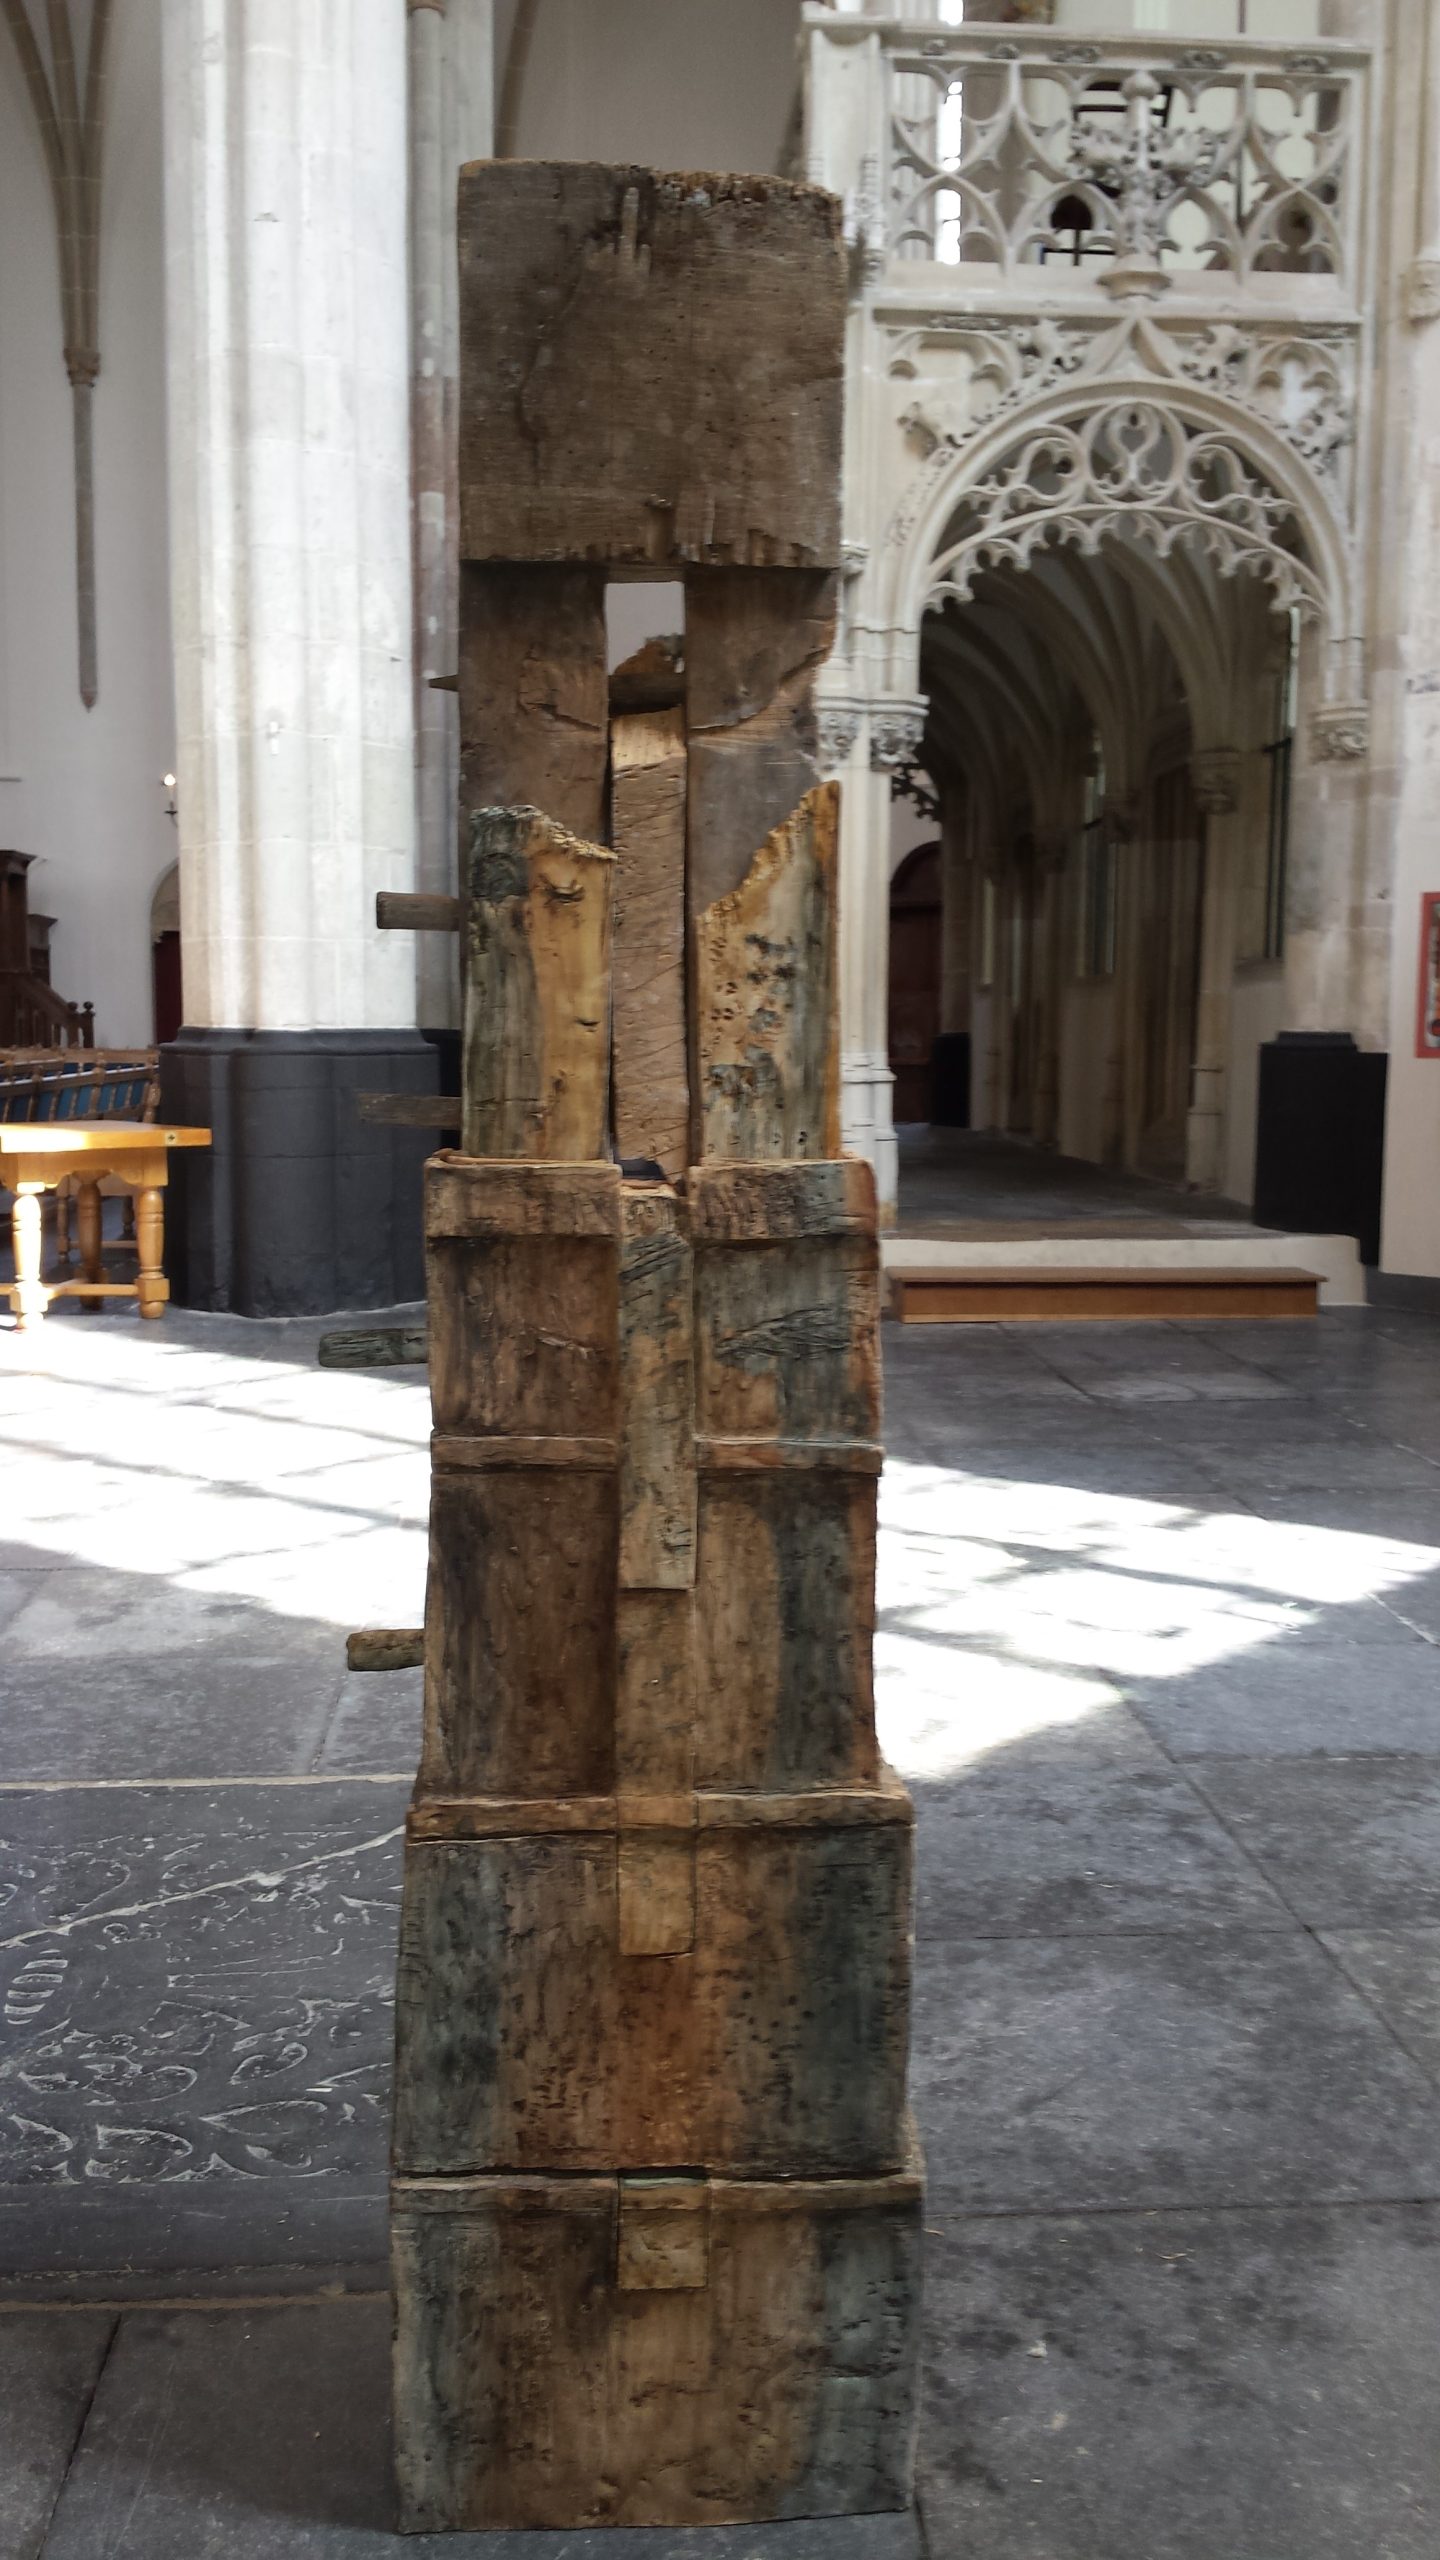 Gedenken het stuk hout met de boktor van de zolder van de Joriskerk, 2015 Keramiek en hout,, 200 cm x 55 cm x 40 cm